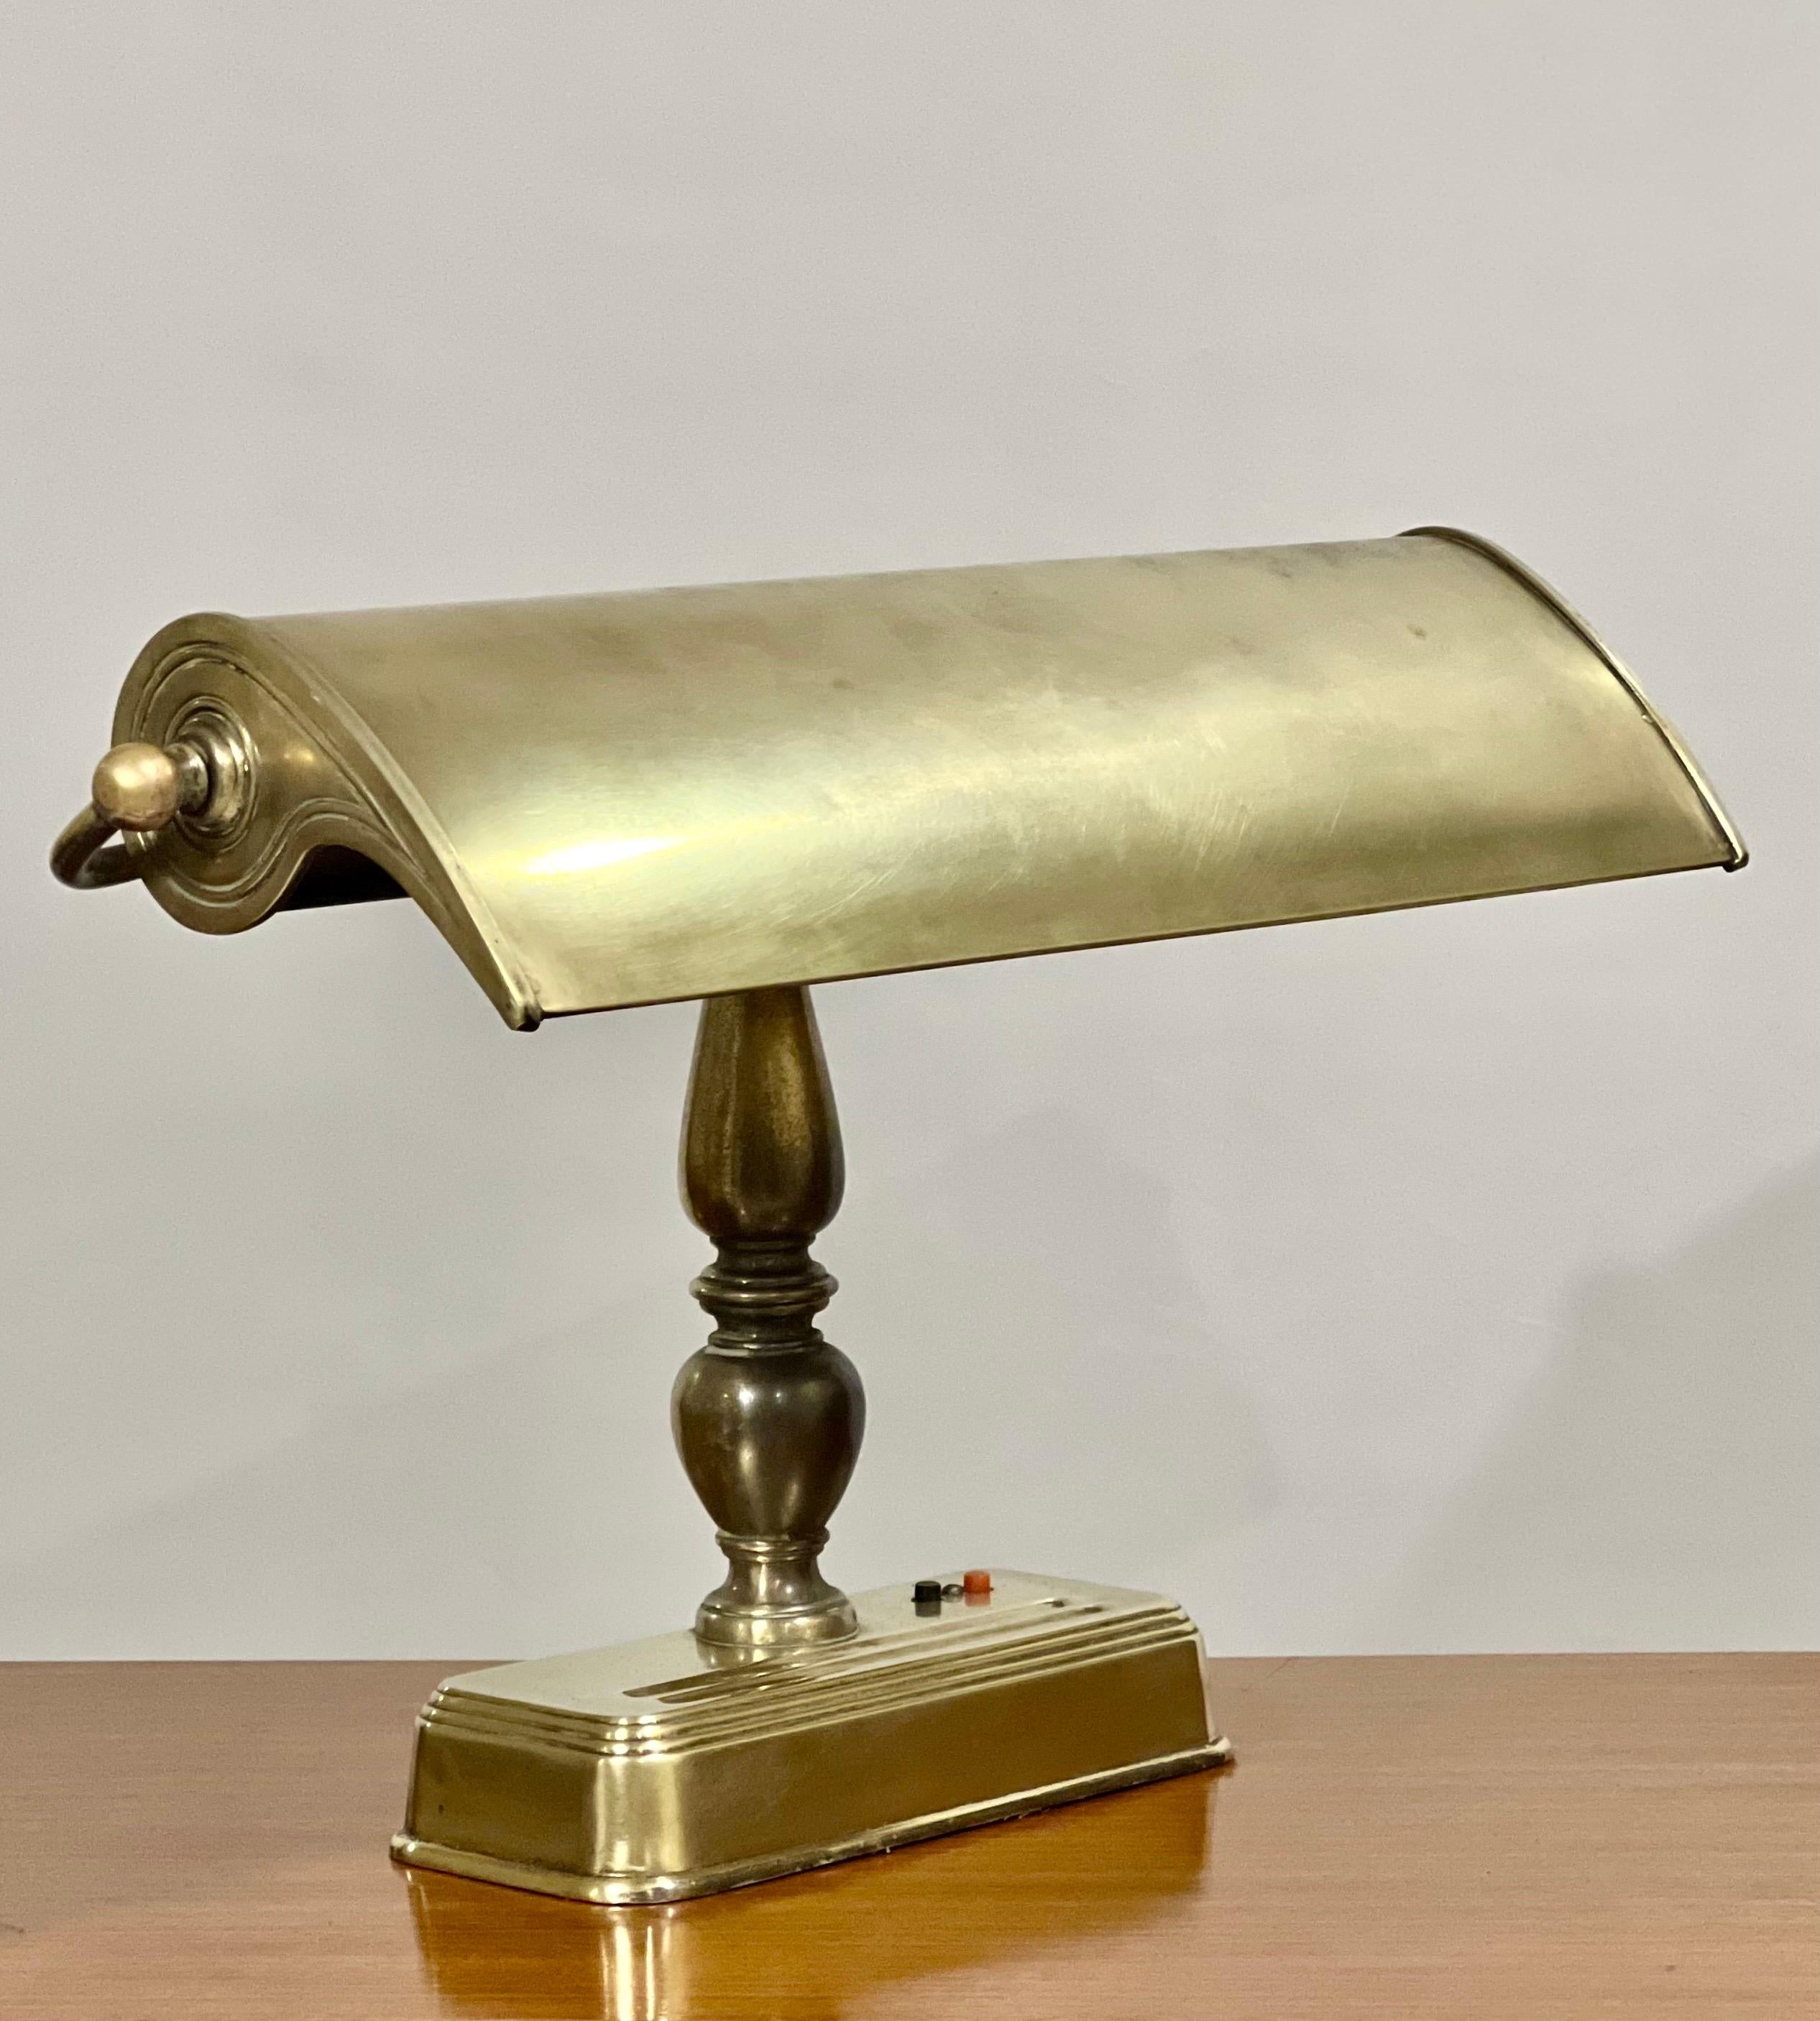 Große Banker-Schreibtischlampe mit verstellbarem Schirm, um 1950.

Dies ist eine beeindruckende Lampe mit tollem Design. Ein Sockel in Form einer Balustrade trägt einen verstellbaren Schirm mit weißer Emaille auf der Unterseite und eine einröhrige